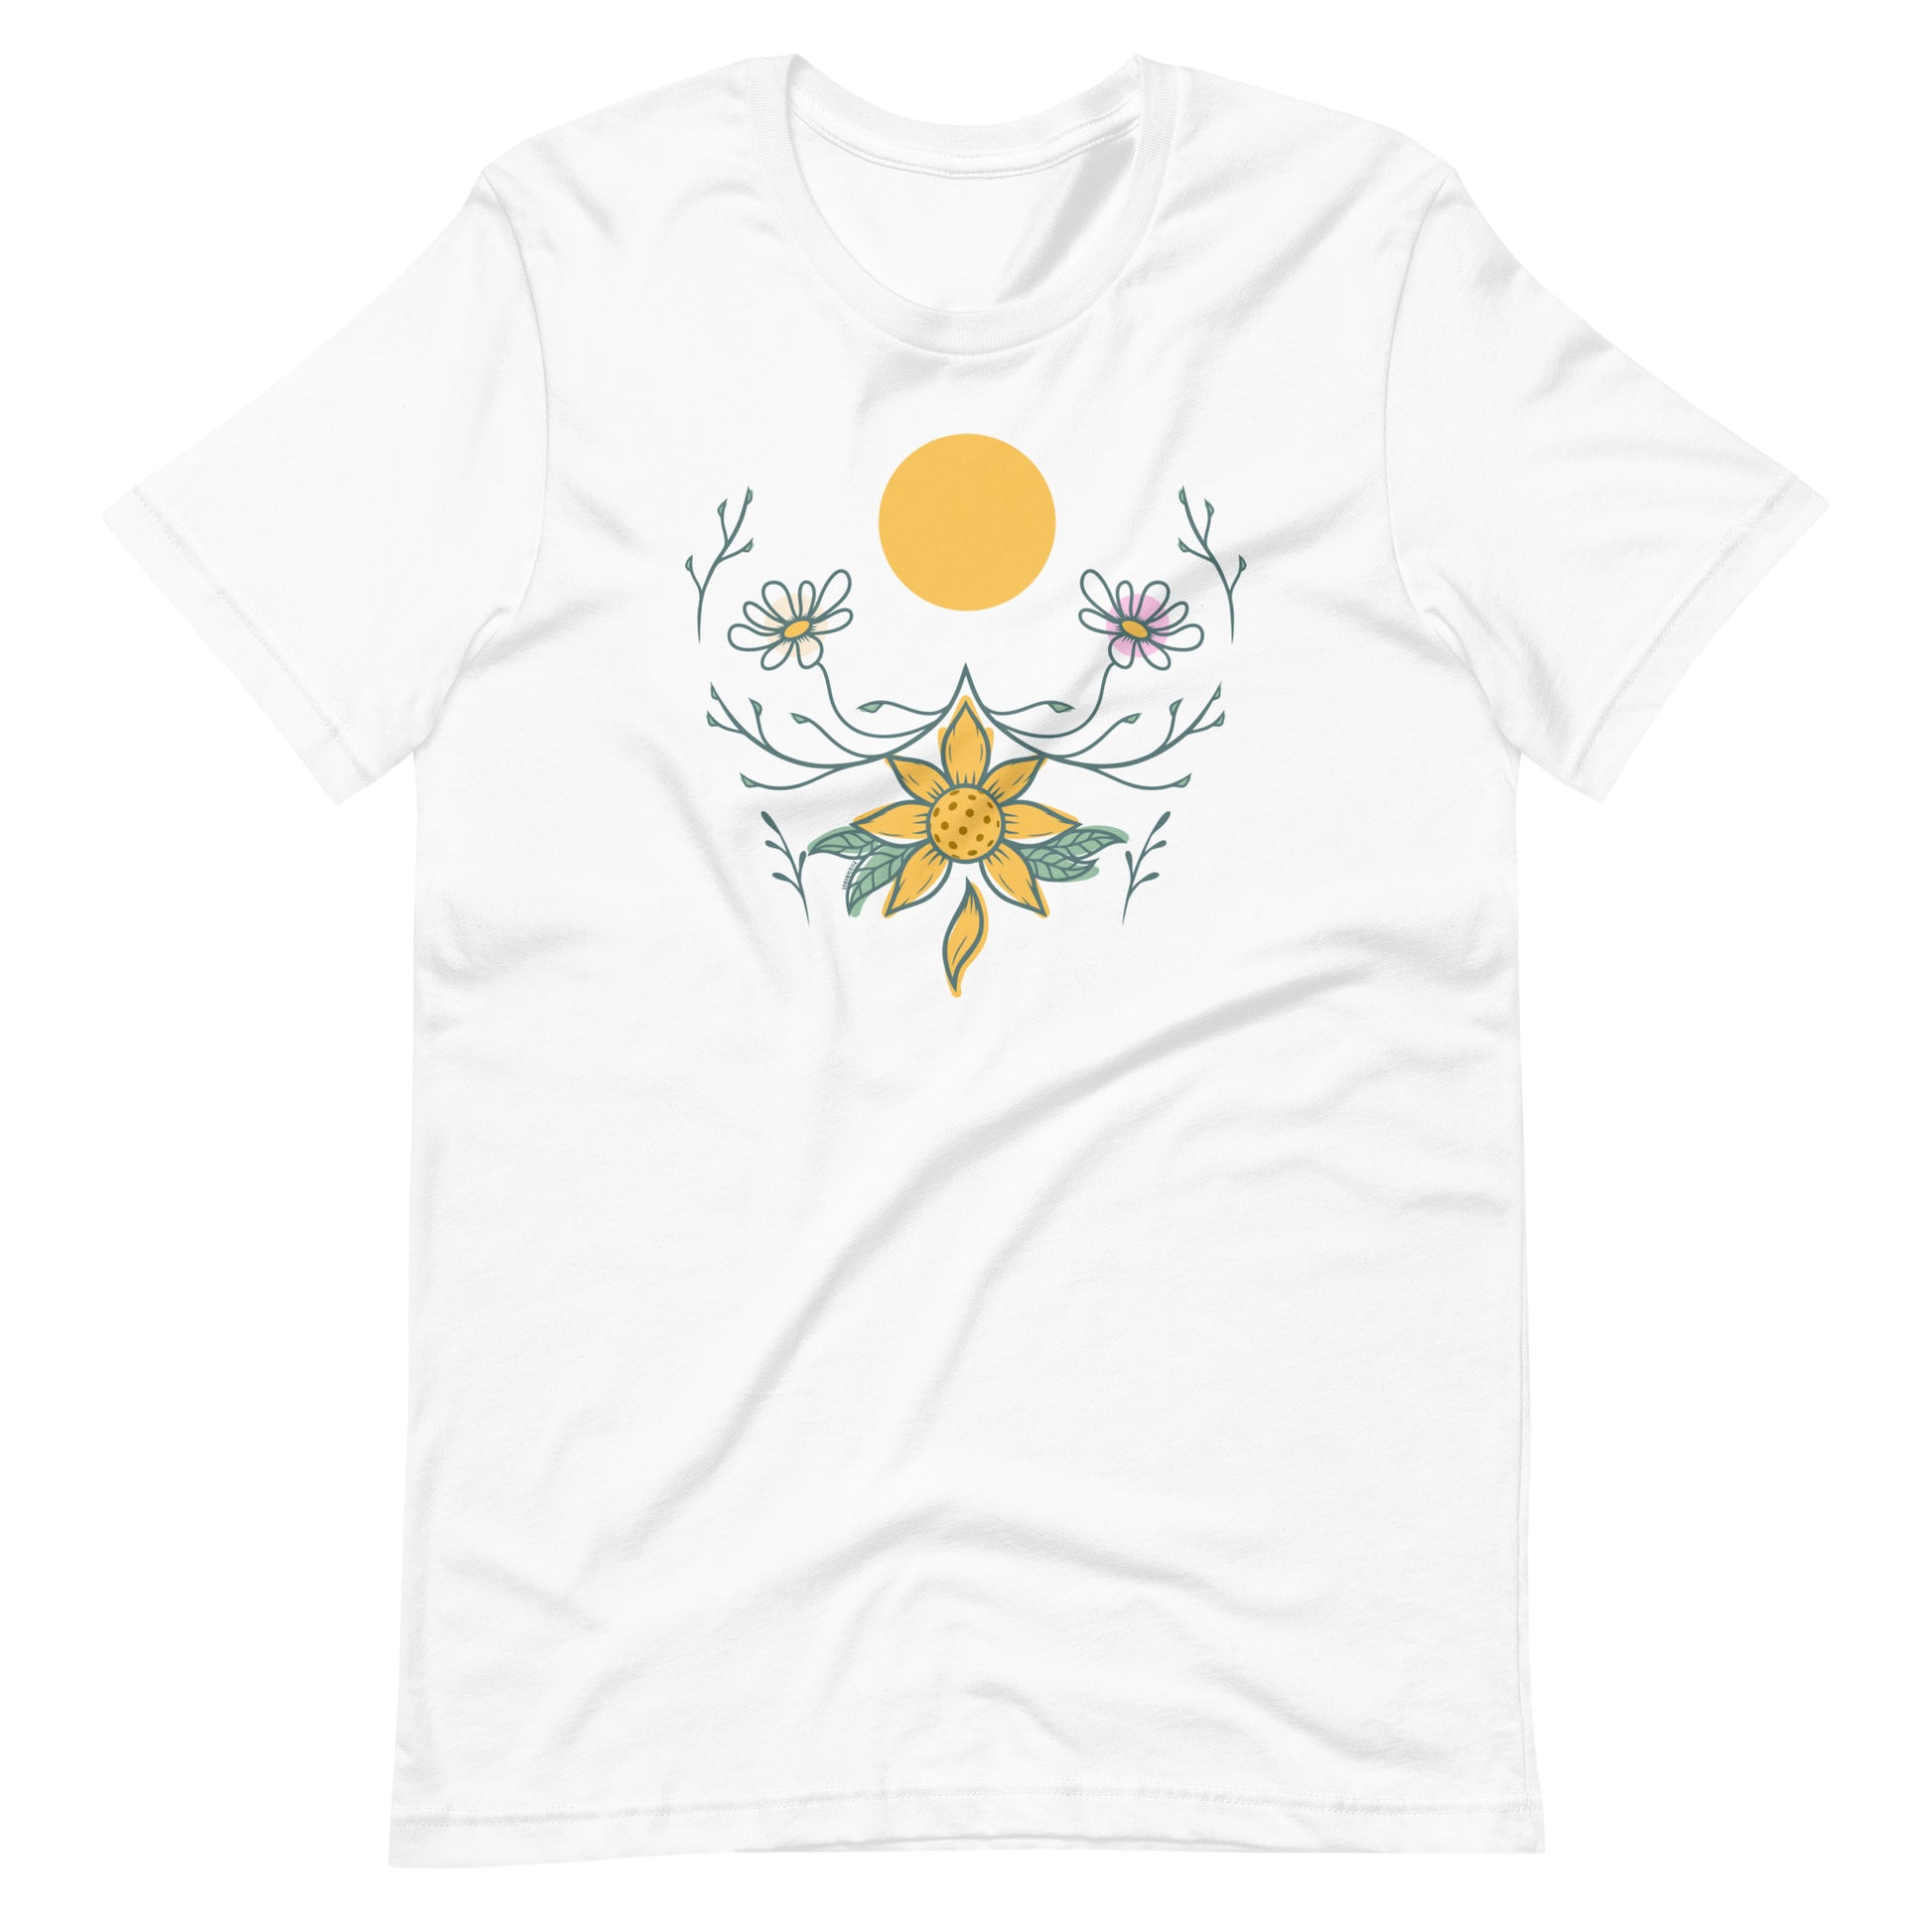 Fun Pickleball Sunset Graphic: "Pickleball Daisy," Womens Unisex White T-Shirt